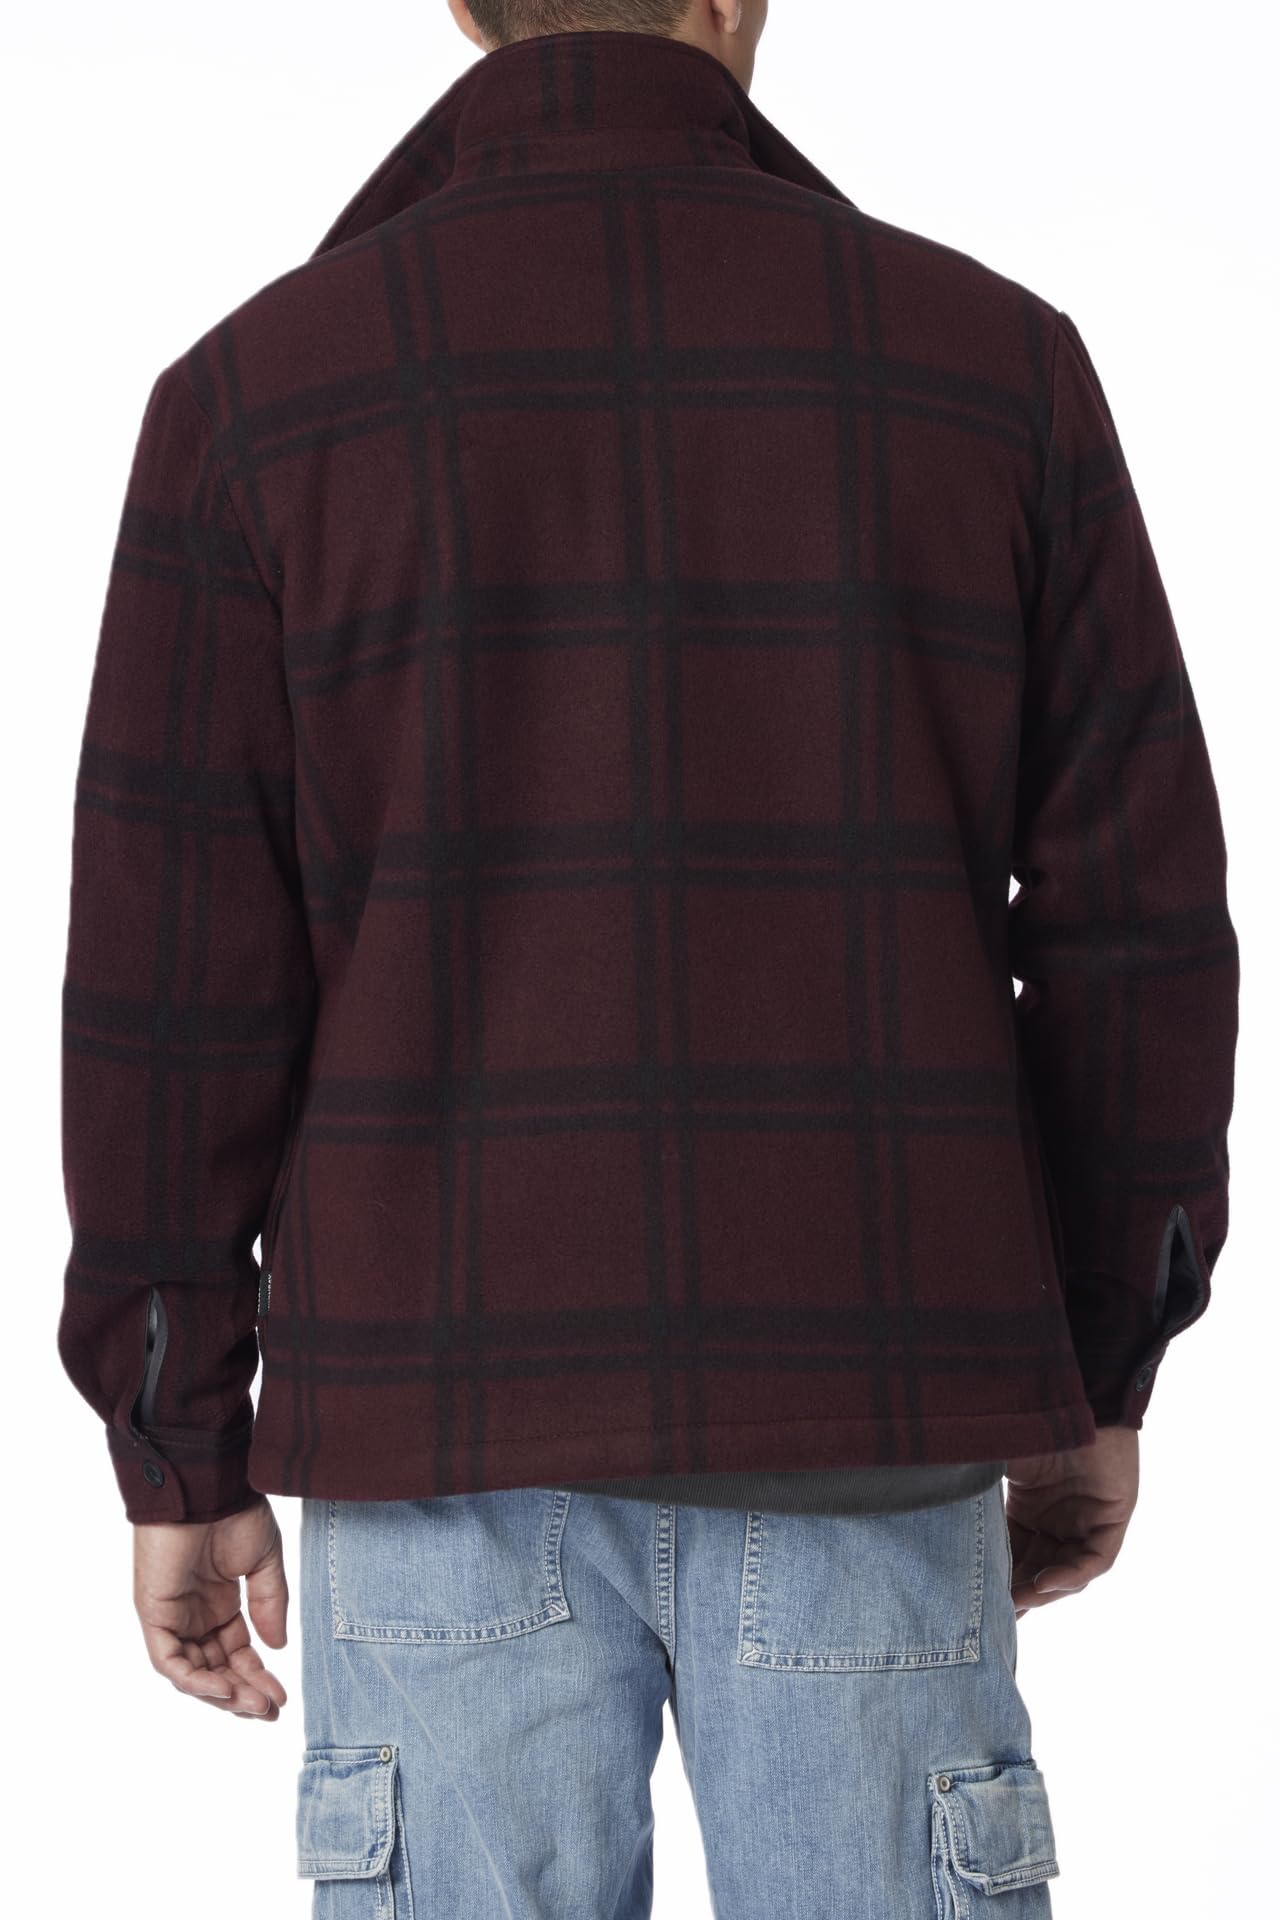 UNIONBAY Men's Woodsman Microfleece Lined Flannel Shirt Jacket